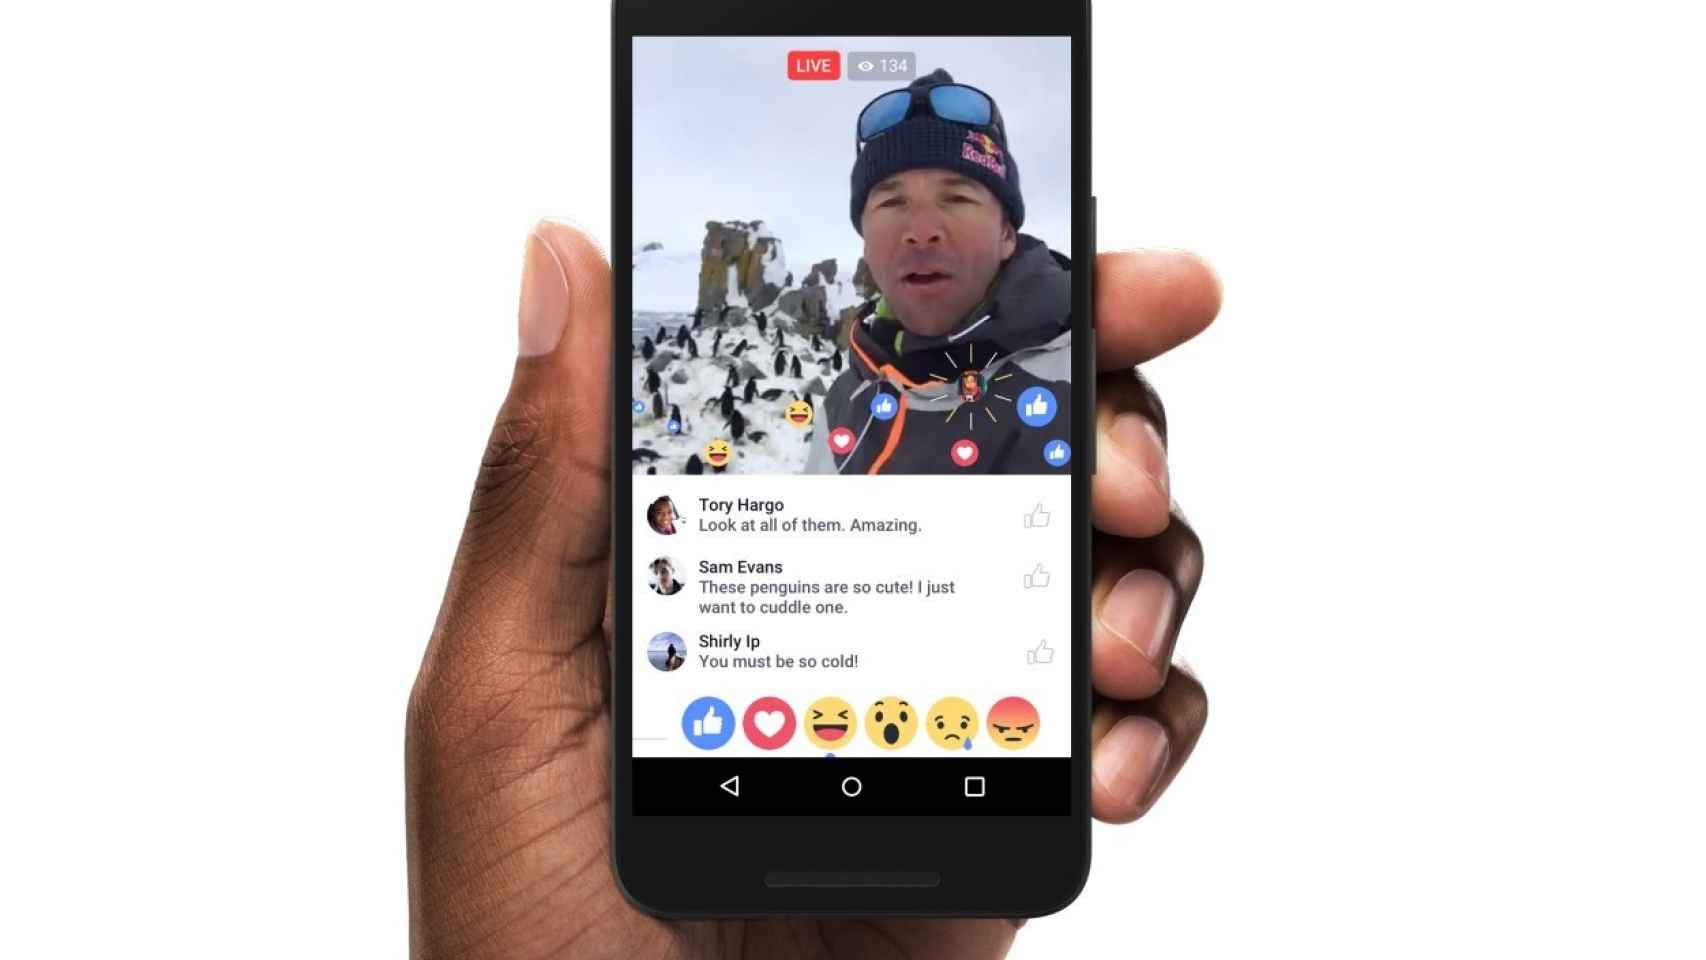 Facebook Live Video copia a Periscope. Ahora es más divertido y social